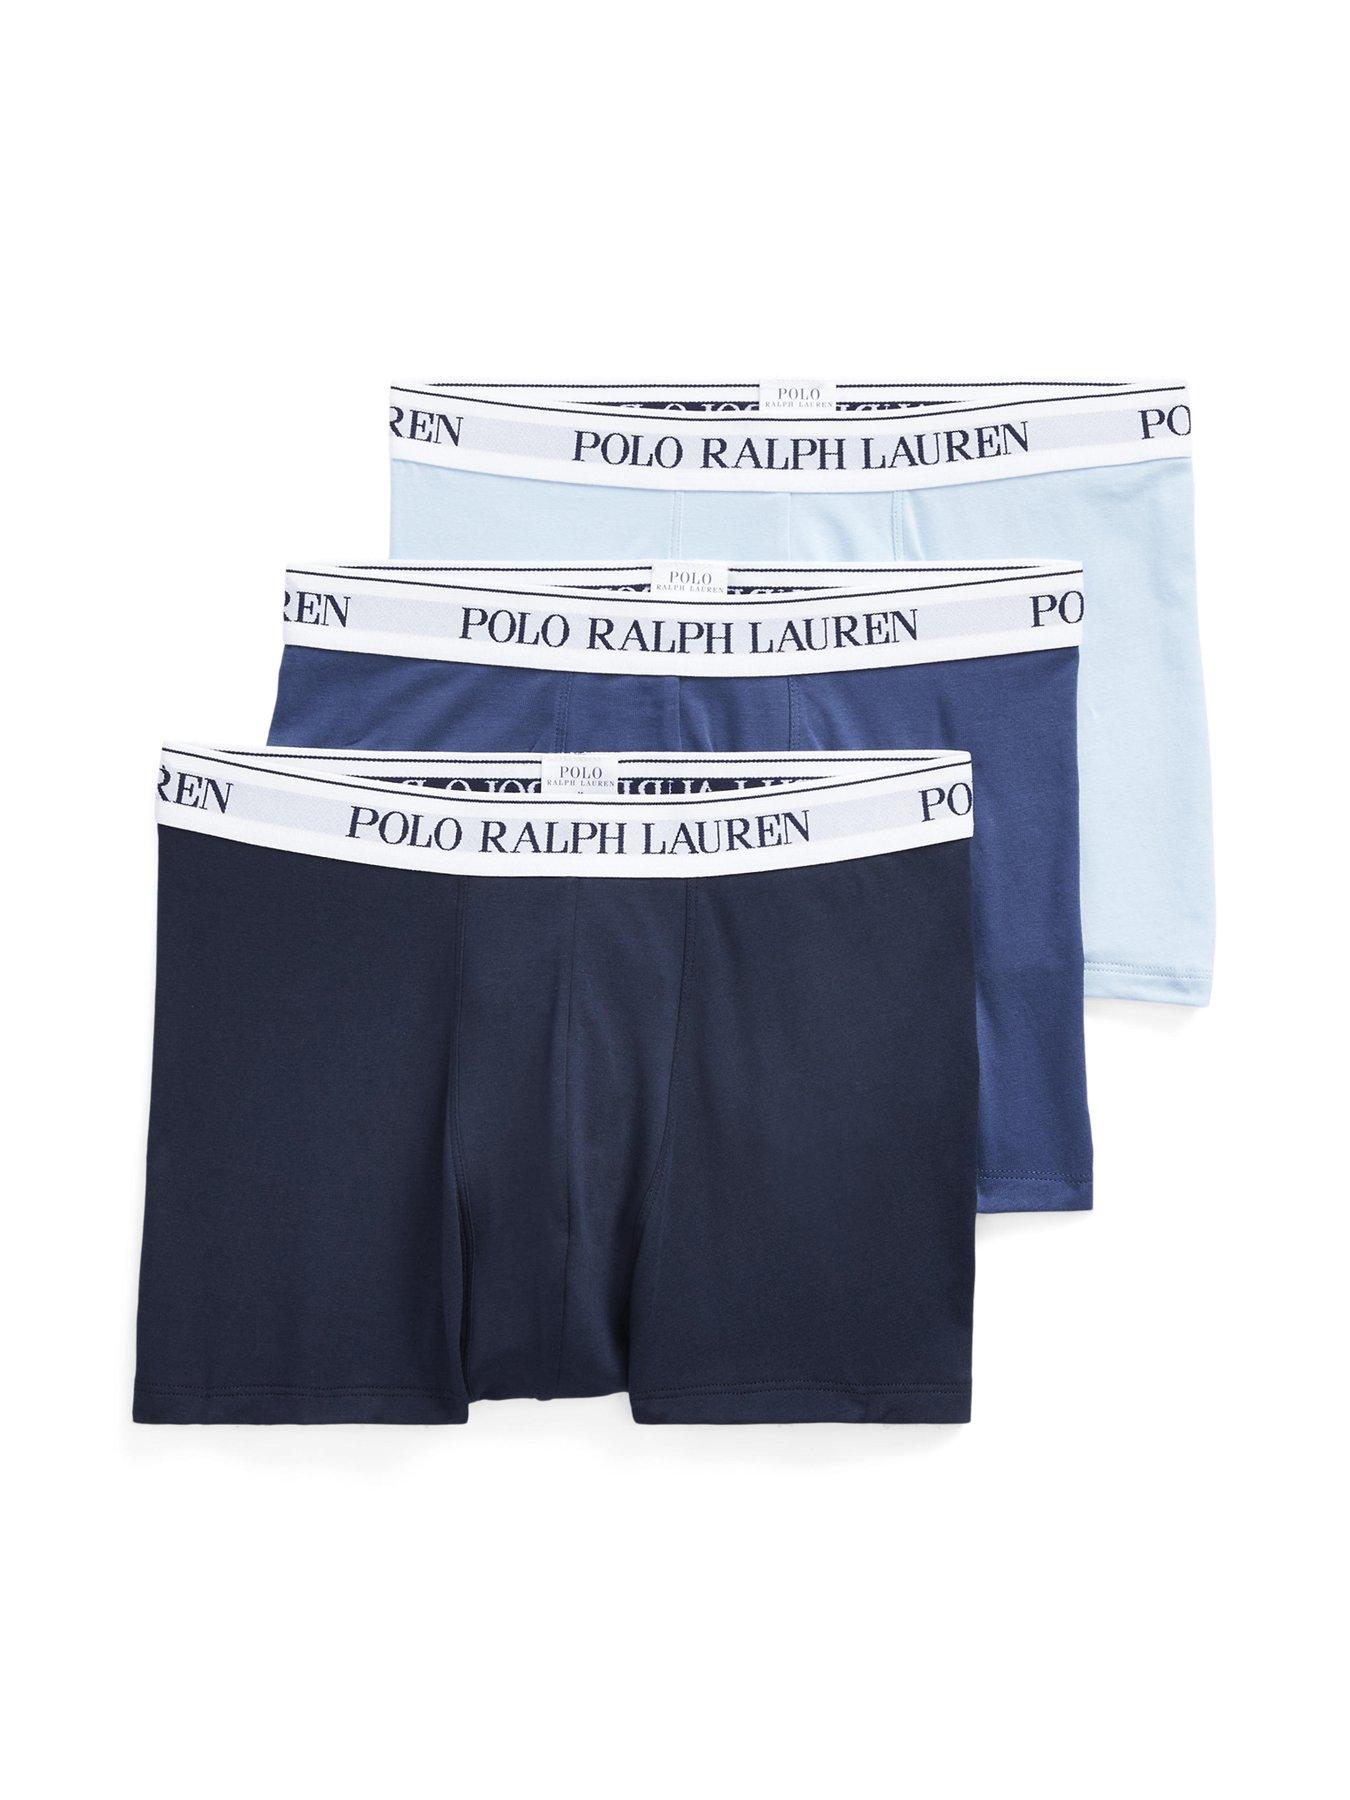 Men's Polo Ralph Lauren Boxer Briefs 2 Pack Black/Charcoal Size L